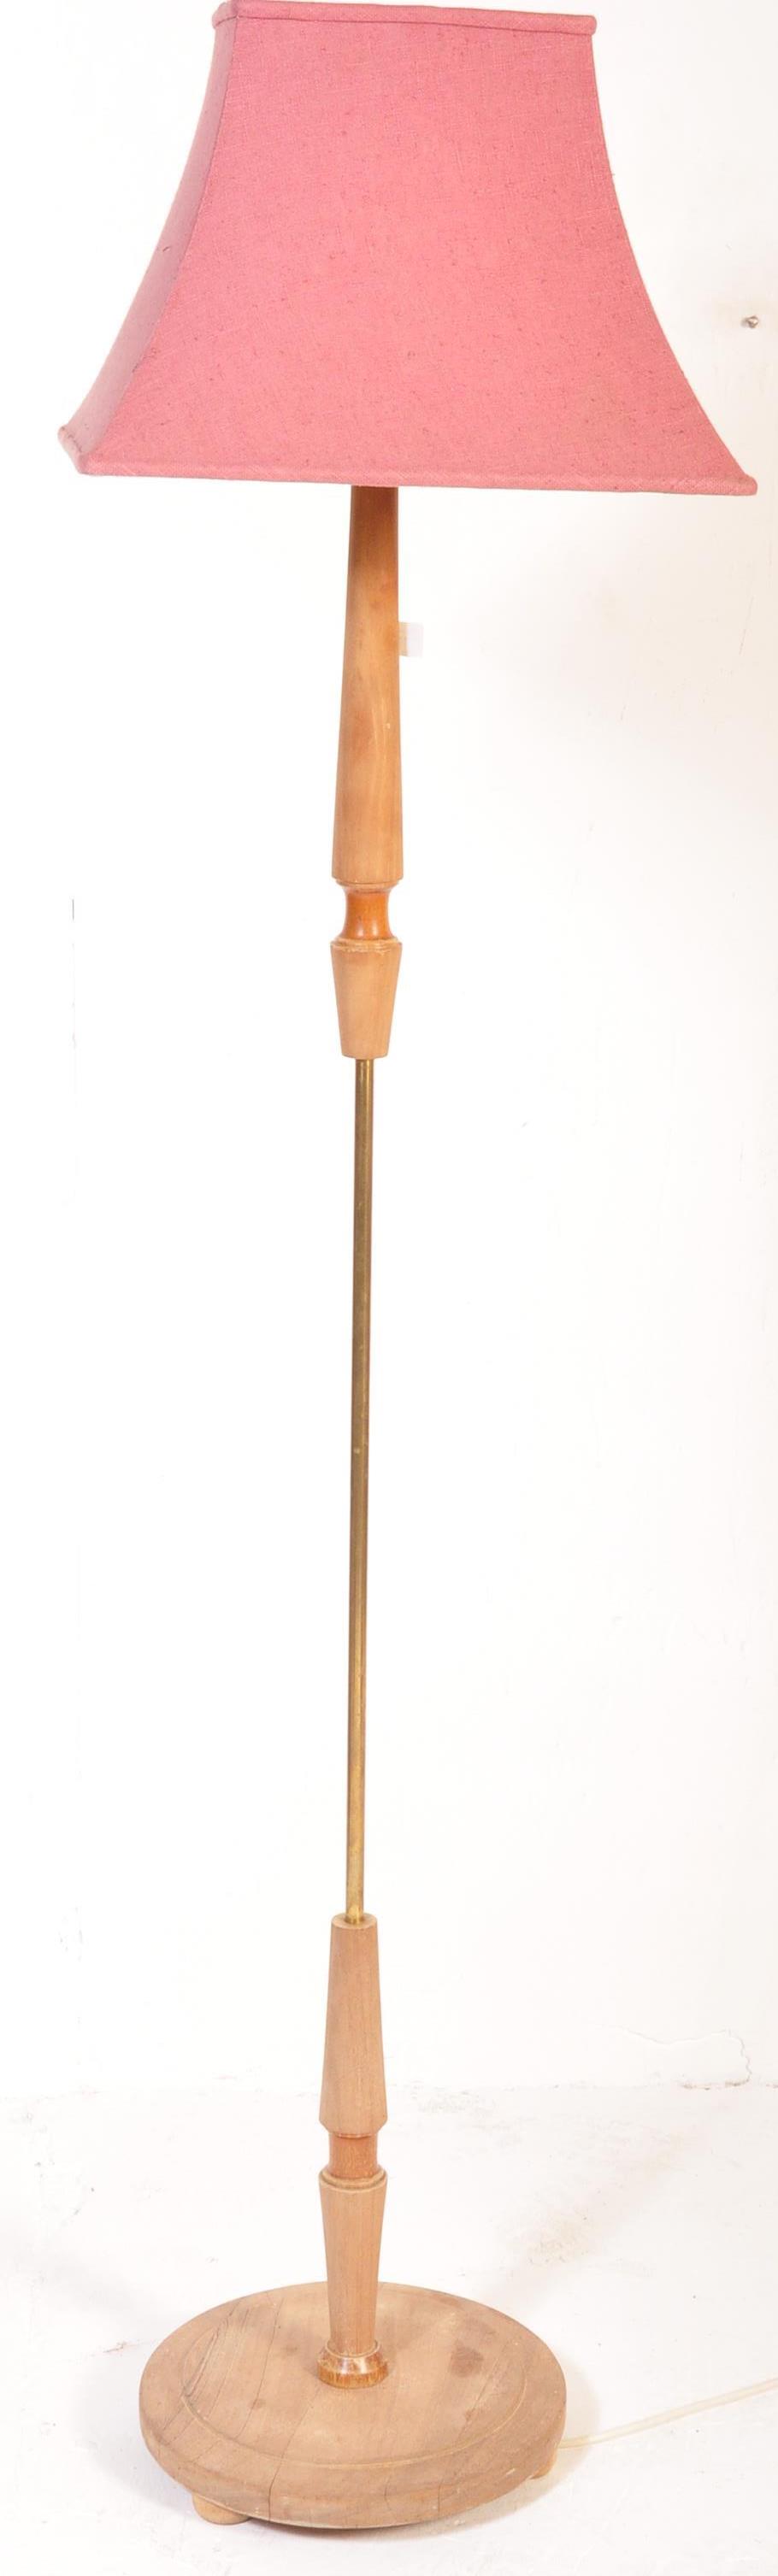 RETRO MID 20TH CENTURY TEAK WOOD FLOOR STANDARD LAMP - Image 2 of 4